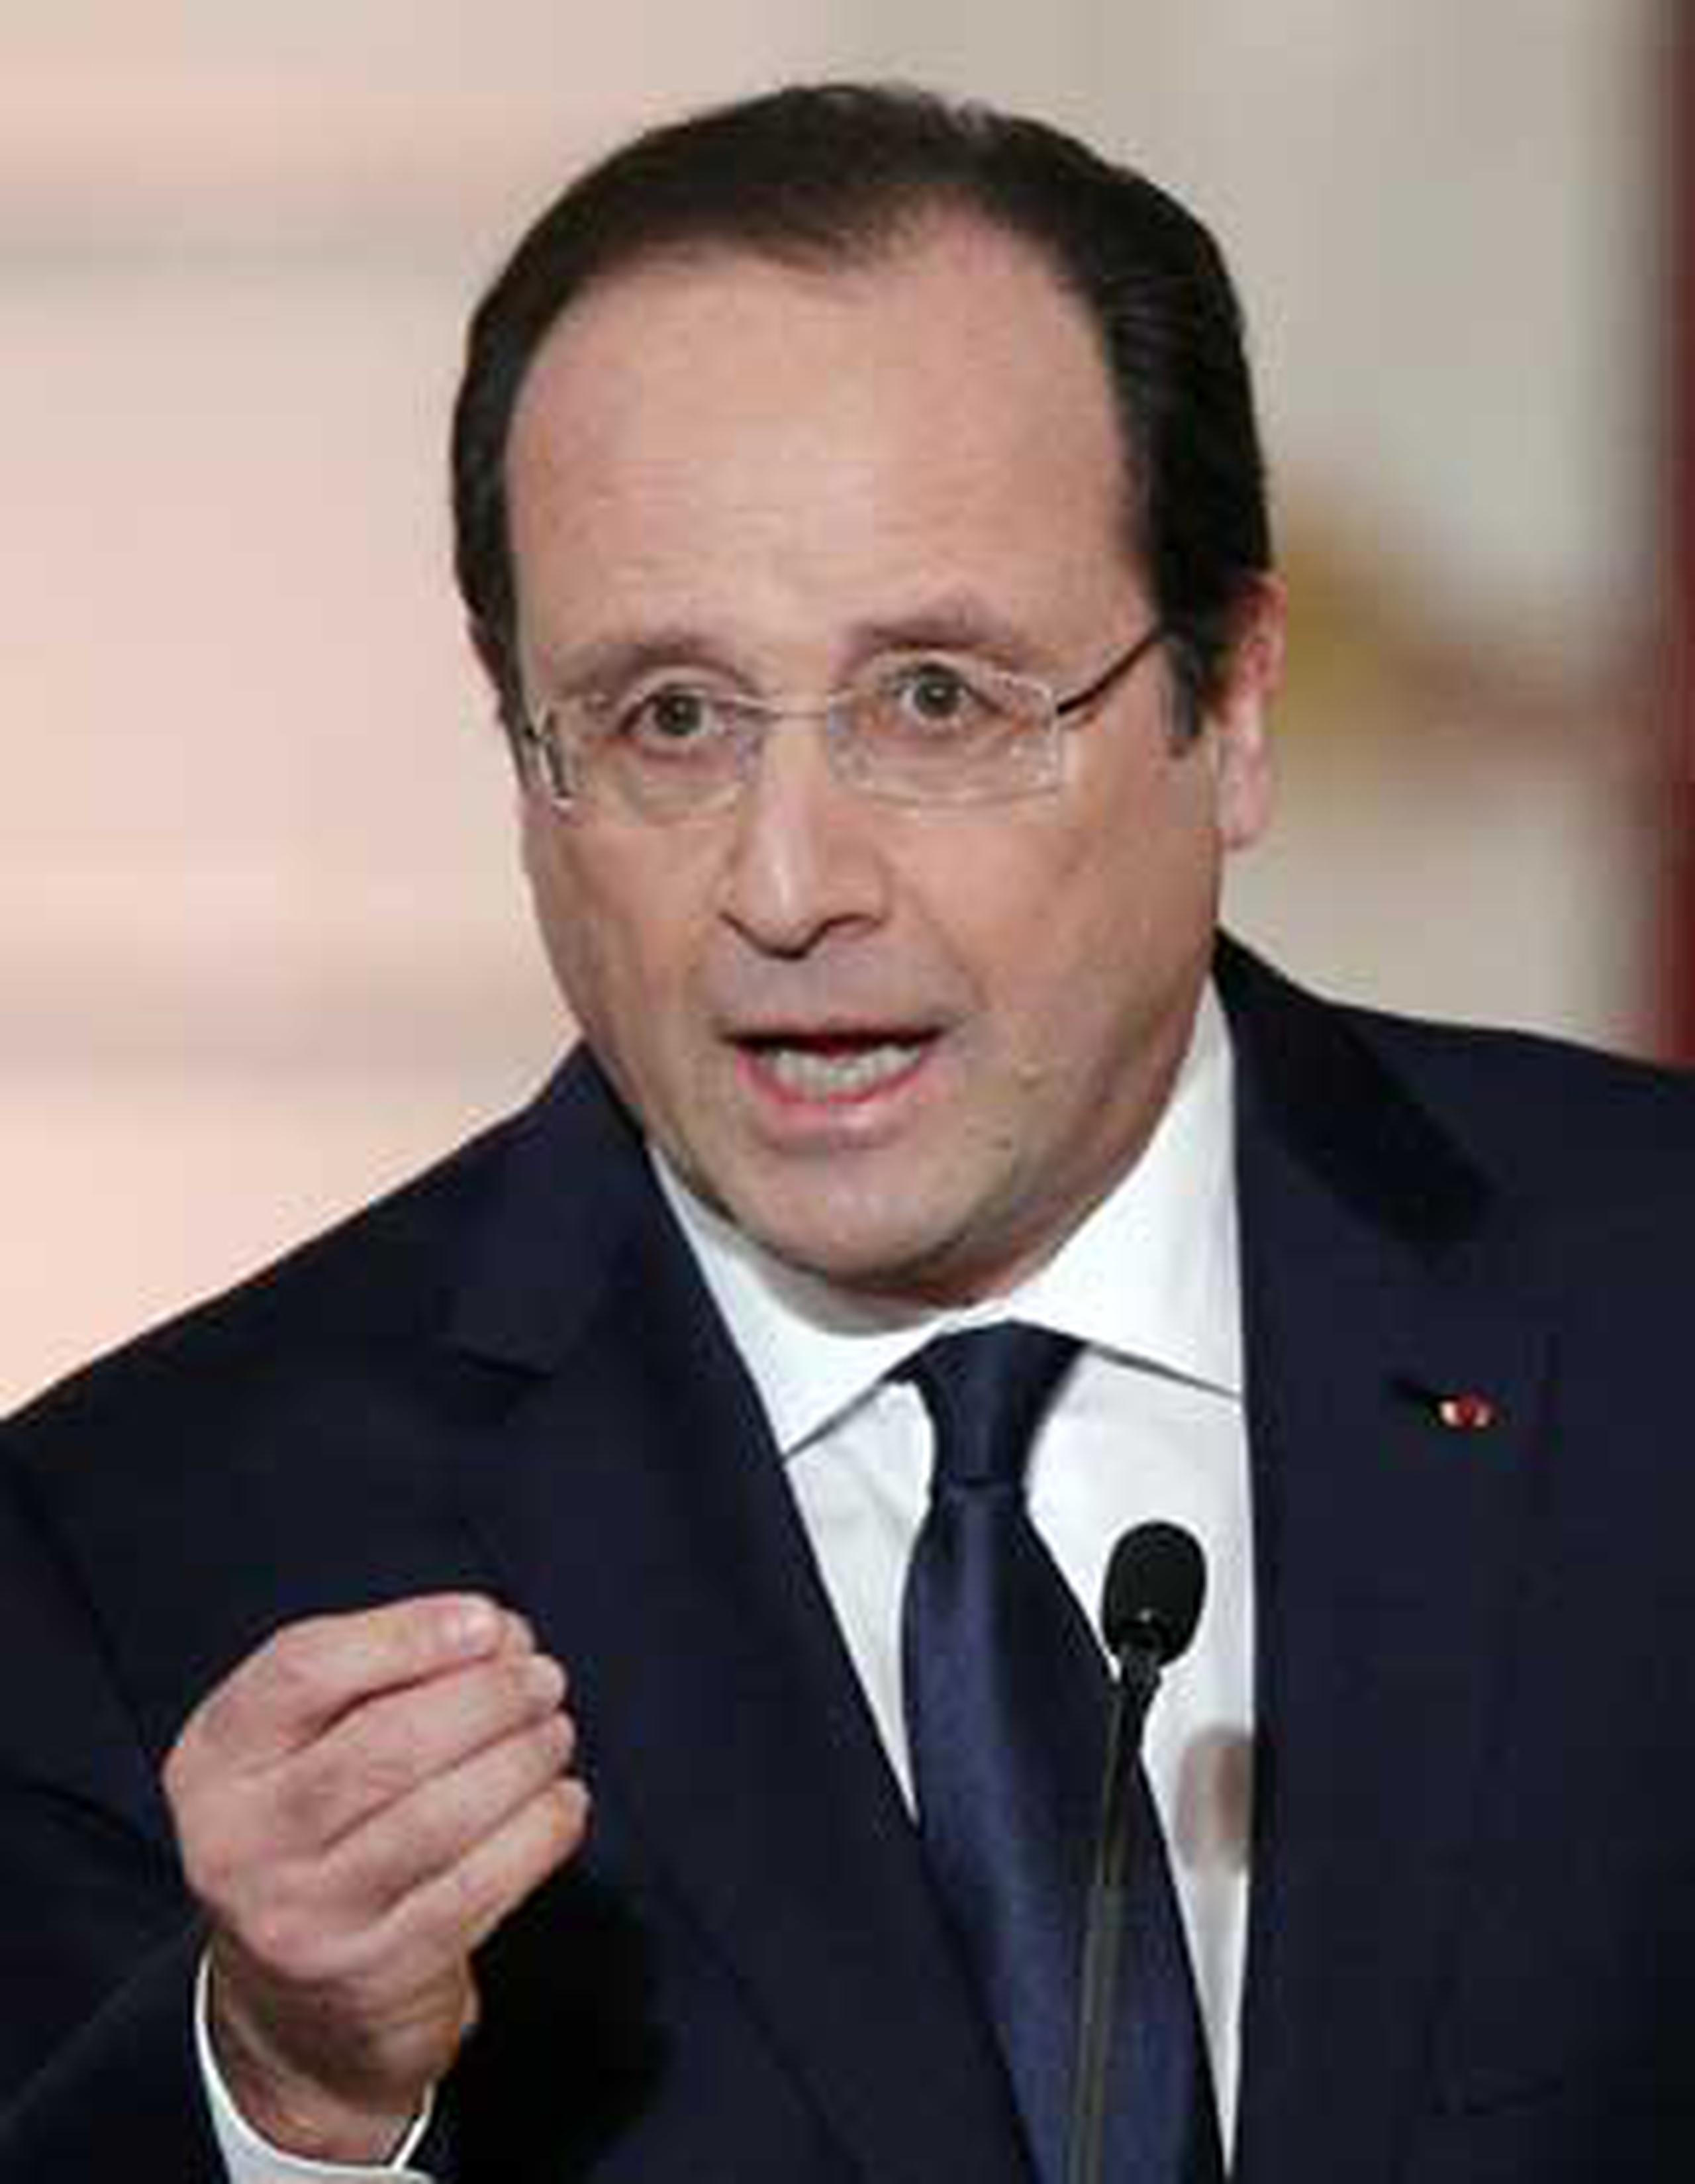 El presidente Francois Hollande expresó su indignación ante "este drama abominable" y envió al ministro de Educación a Albi, en el sur de Francia. (Prensa Asociada)